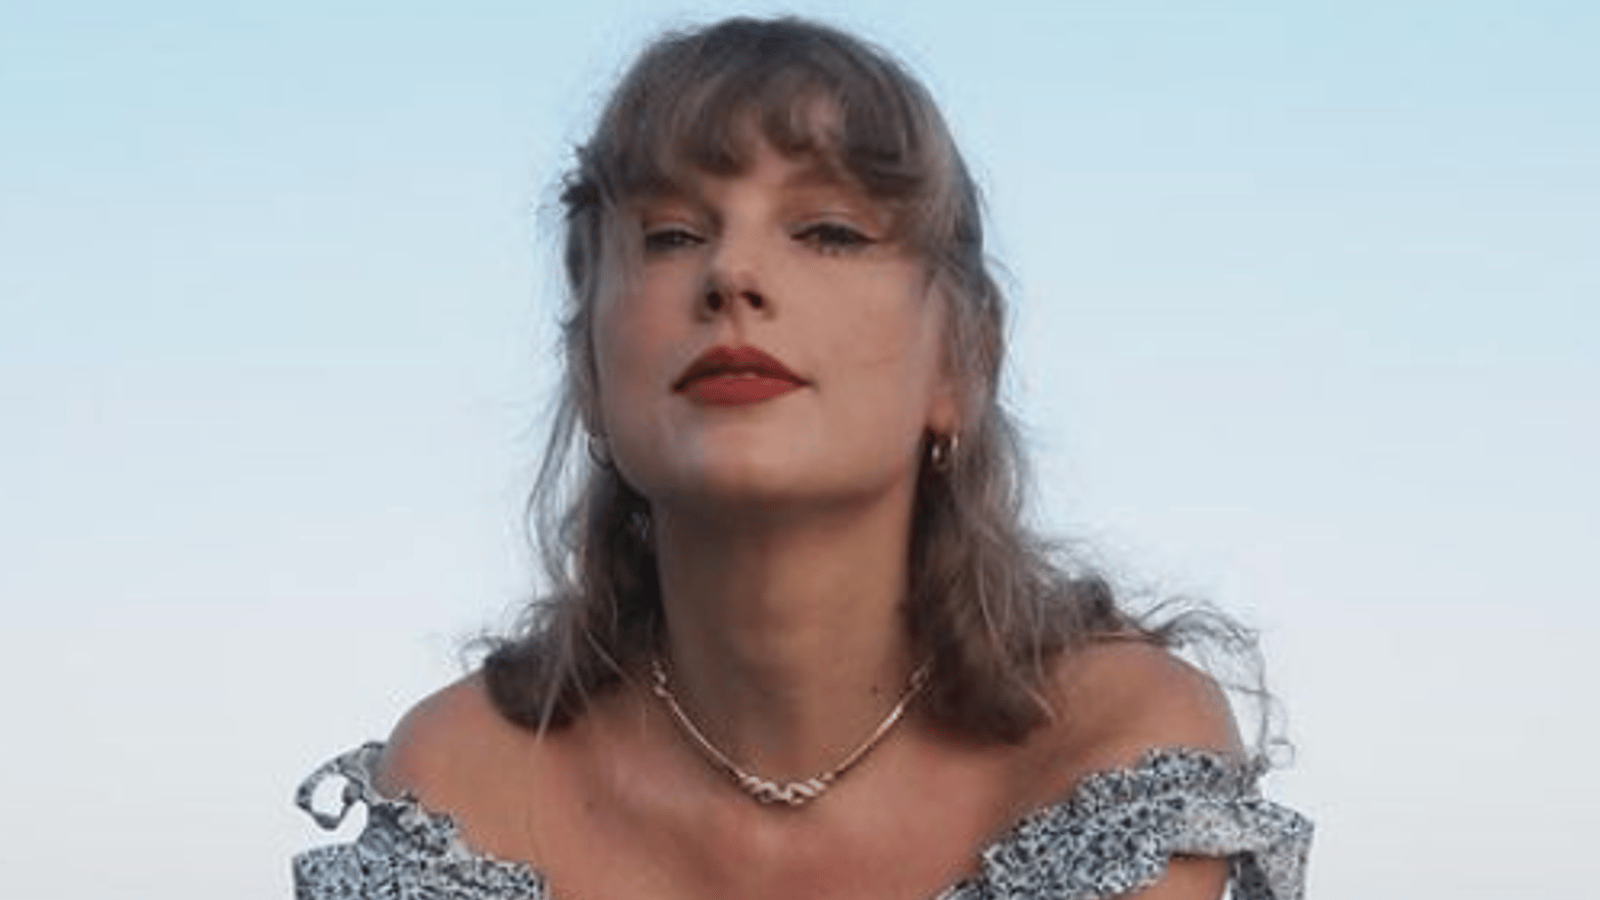 Taylor Swift encourage une compagnie québécoise dans son nouveau vidéoclip